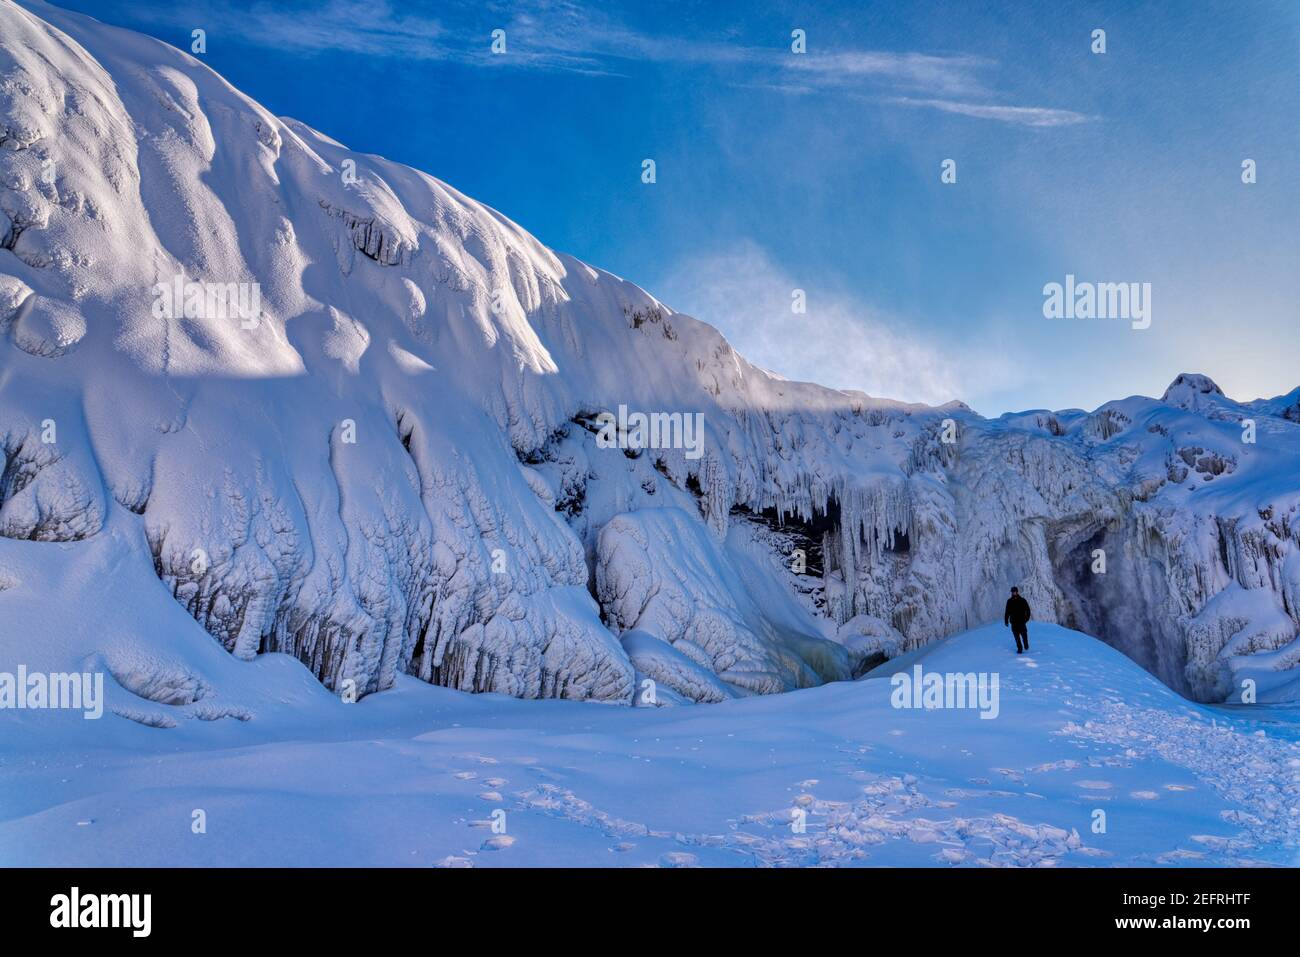 Une personne seule se trouvait sur une calotte glaciaire des chutes de Chaudière surgelées de Charny, près de Québec, Canada Banque D'Images